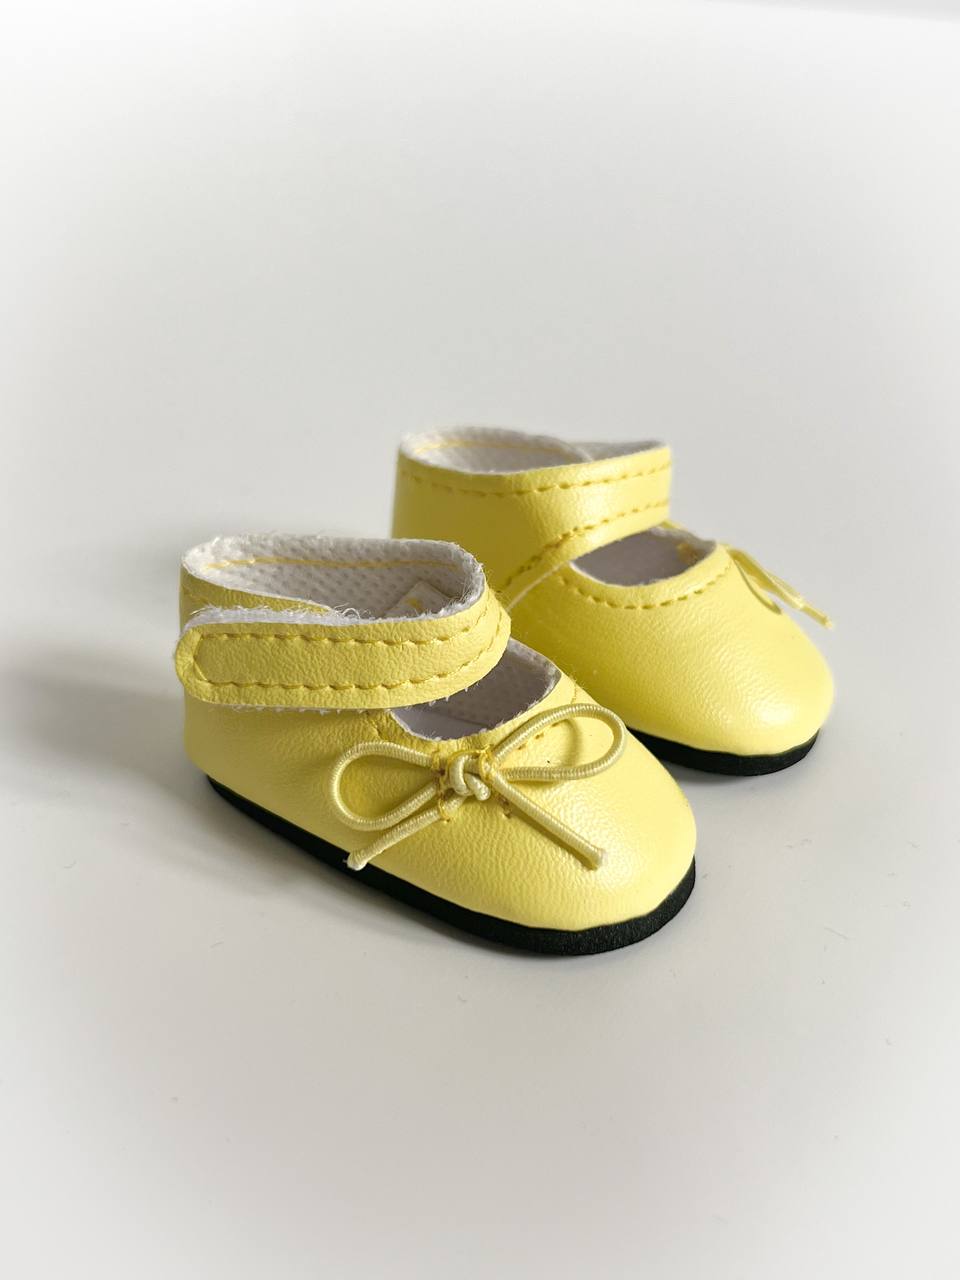 Paola Reina Туфли желтые, для кукол 32 см, арт. 63226